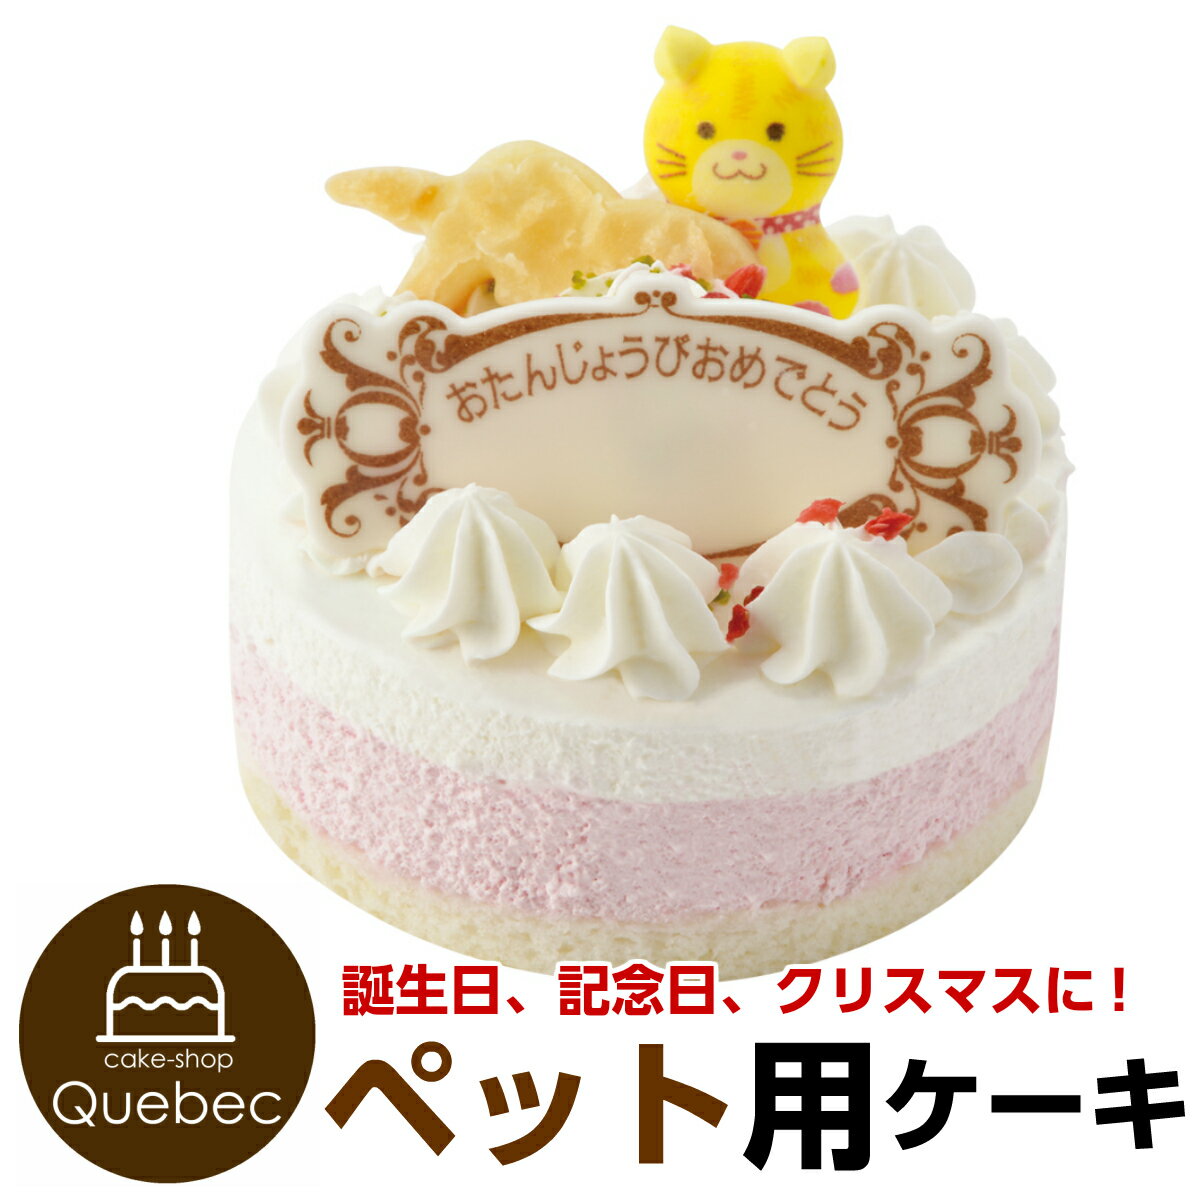 記念日ケーキ 猫用 ネコちゃん用 ペットケーキ 誕生日ケーキ バースデーケーキ ペット用ケーキ (ペットライブラリー or partnerfoods)